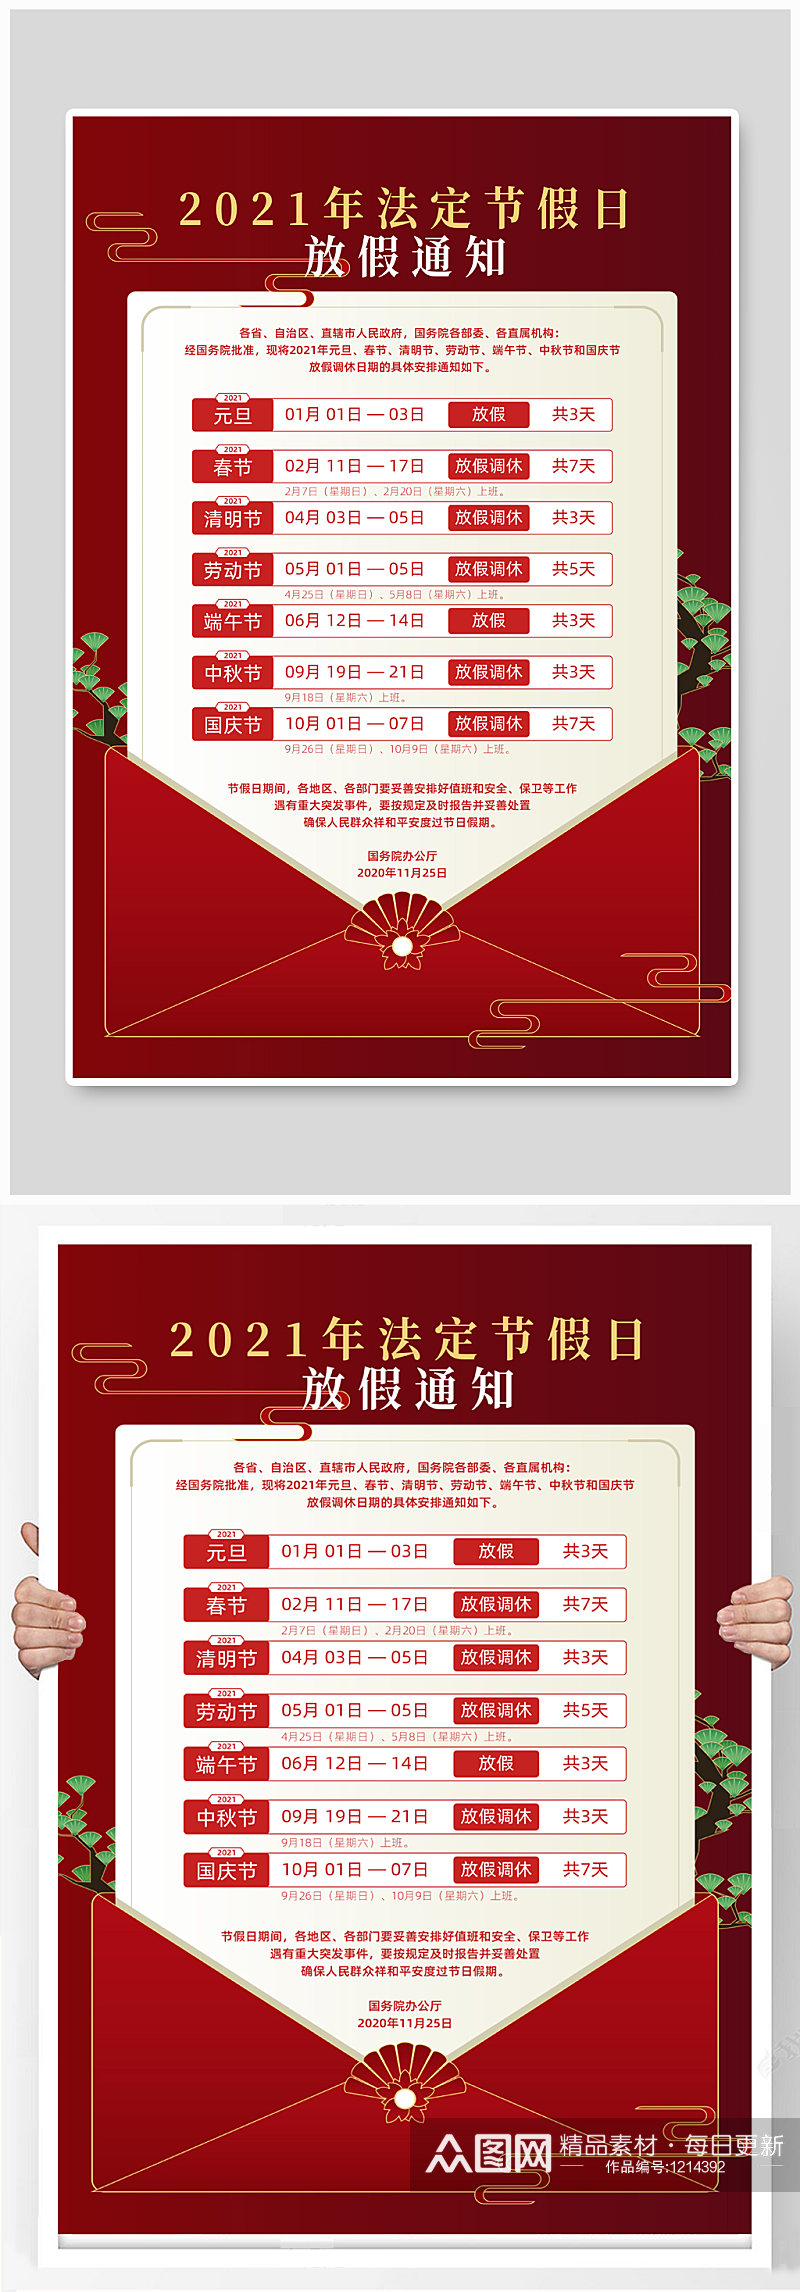 红色春节新年放假通知公示海报素材